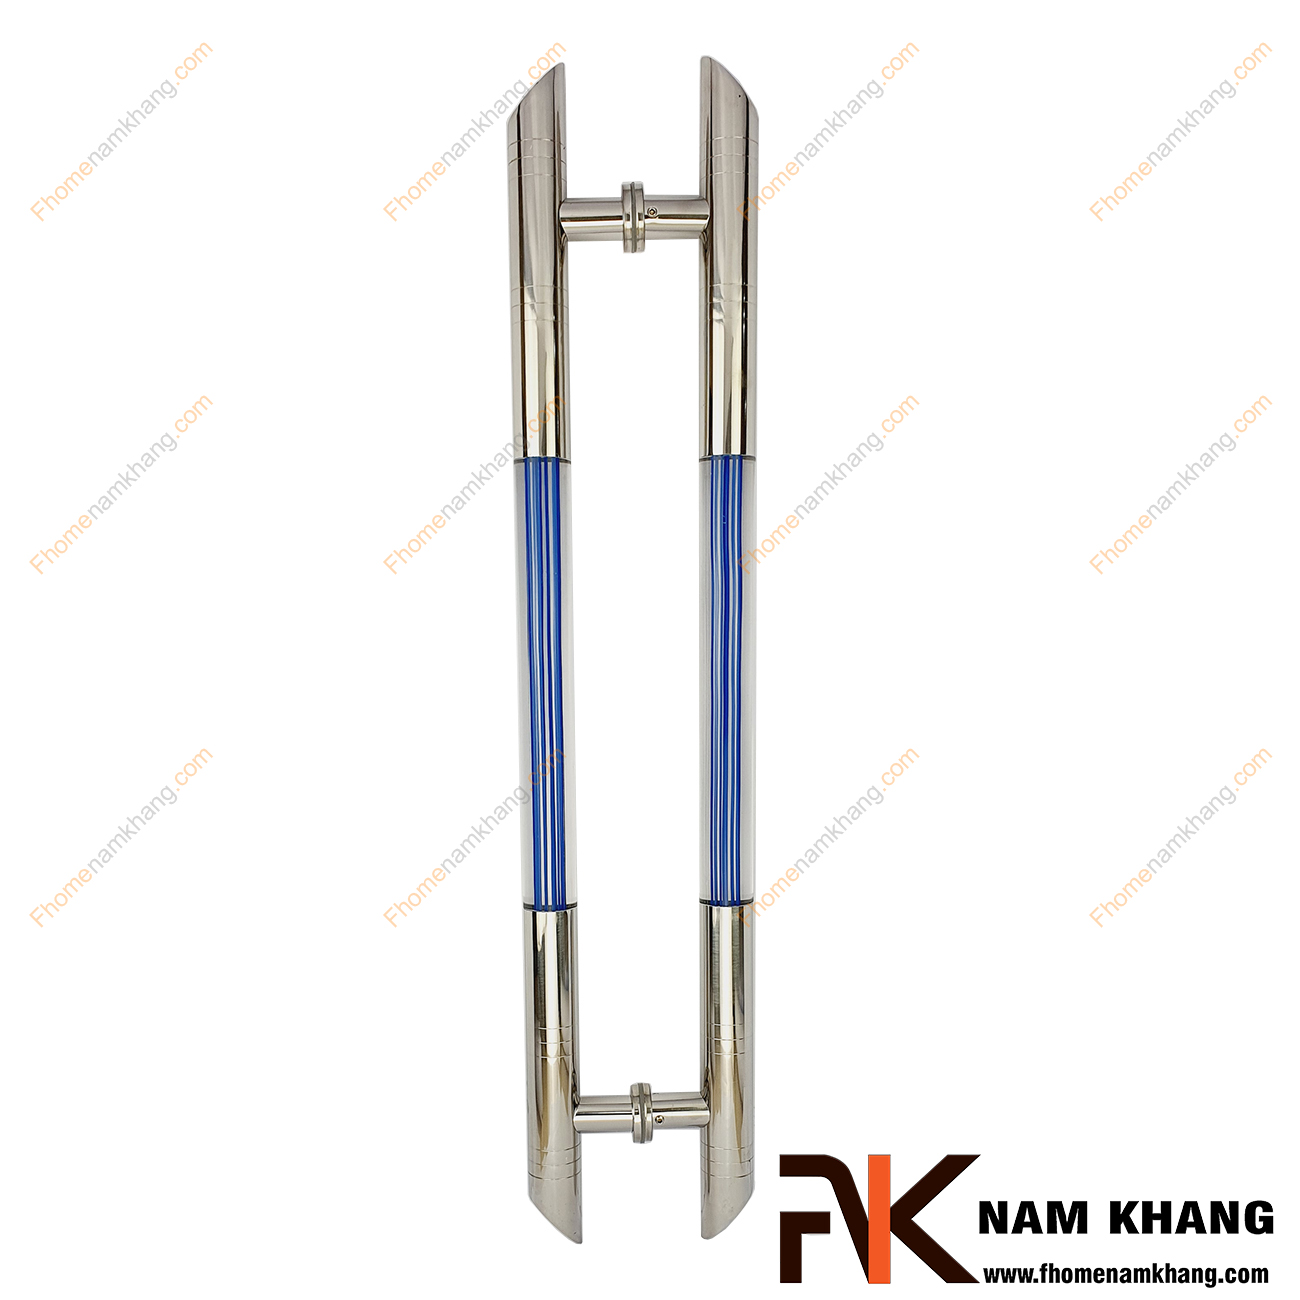 Tay nắm cửa chính màu inox phối mica bọt xanh NKC022-VX là sản phẩm tay nắm tủ đồng tâm dùng cho nhiều loại cửa vời đầy đủ các chất liệu theo thiết kế nội thất.